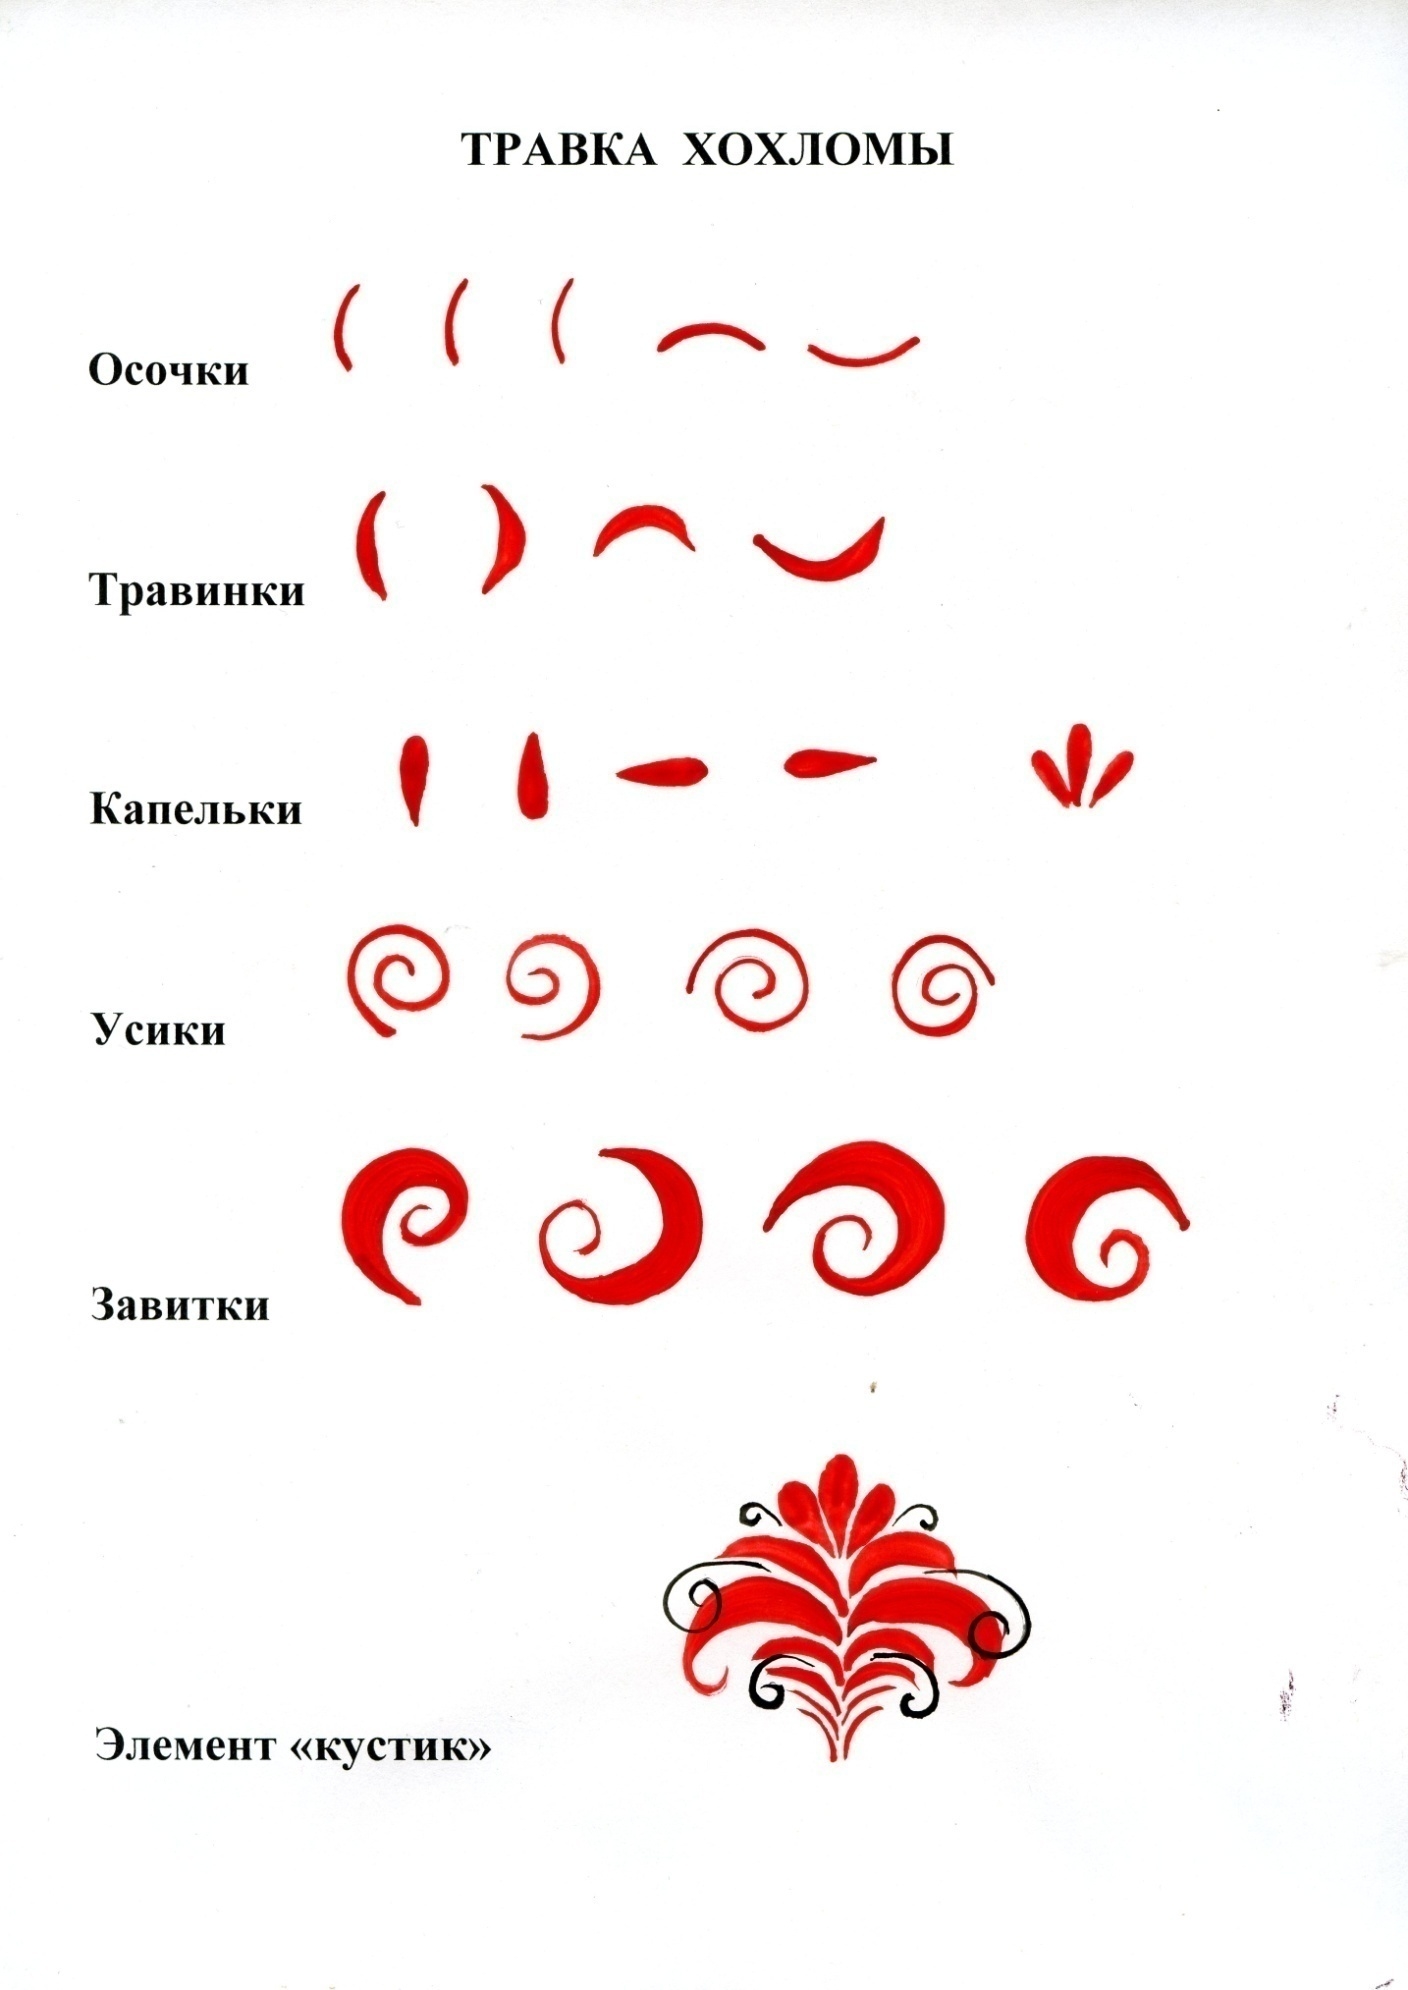 Таблица элементов хохломской росписи